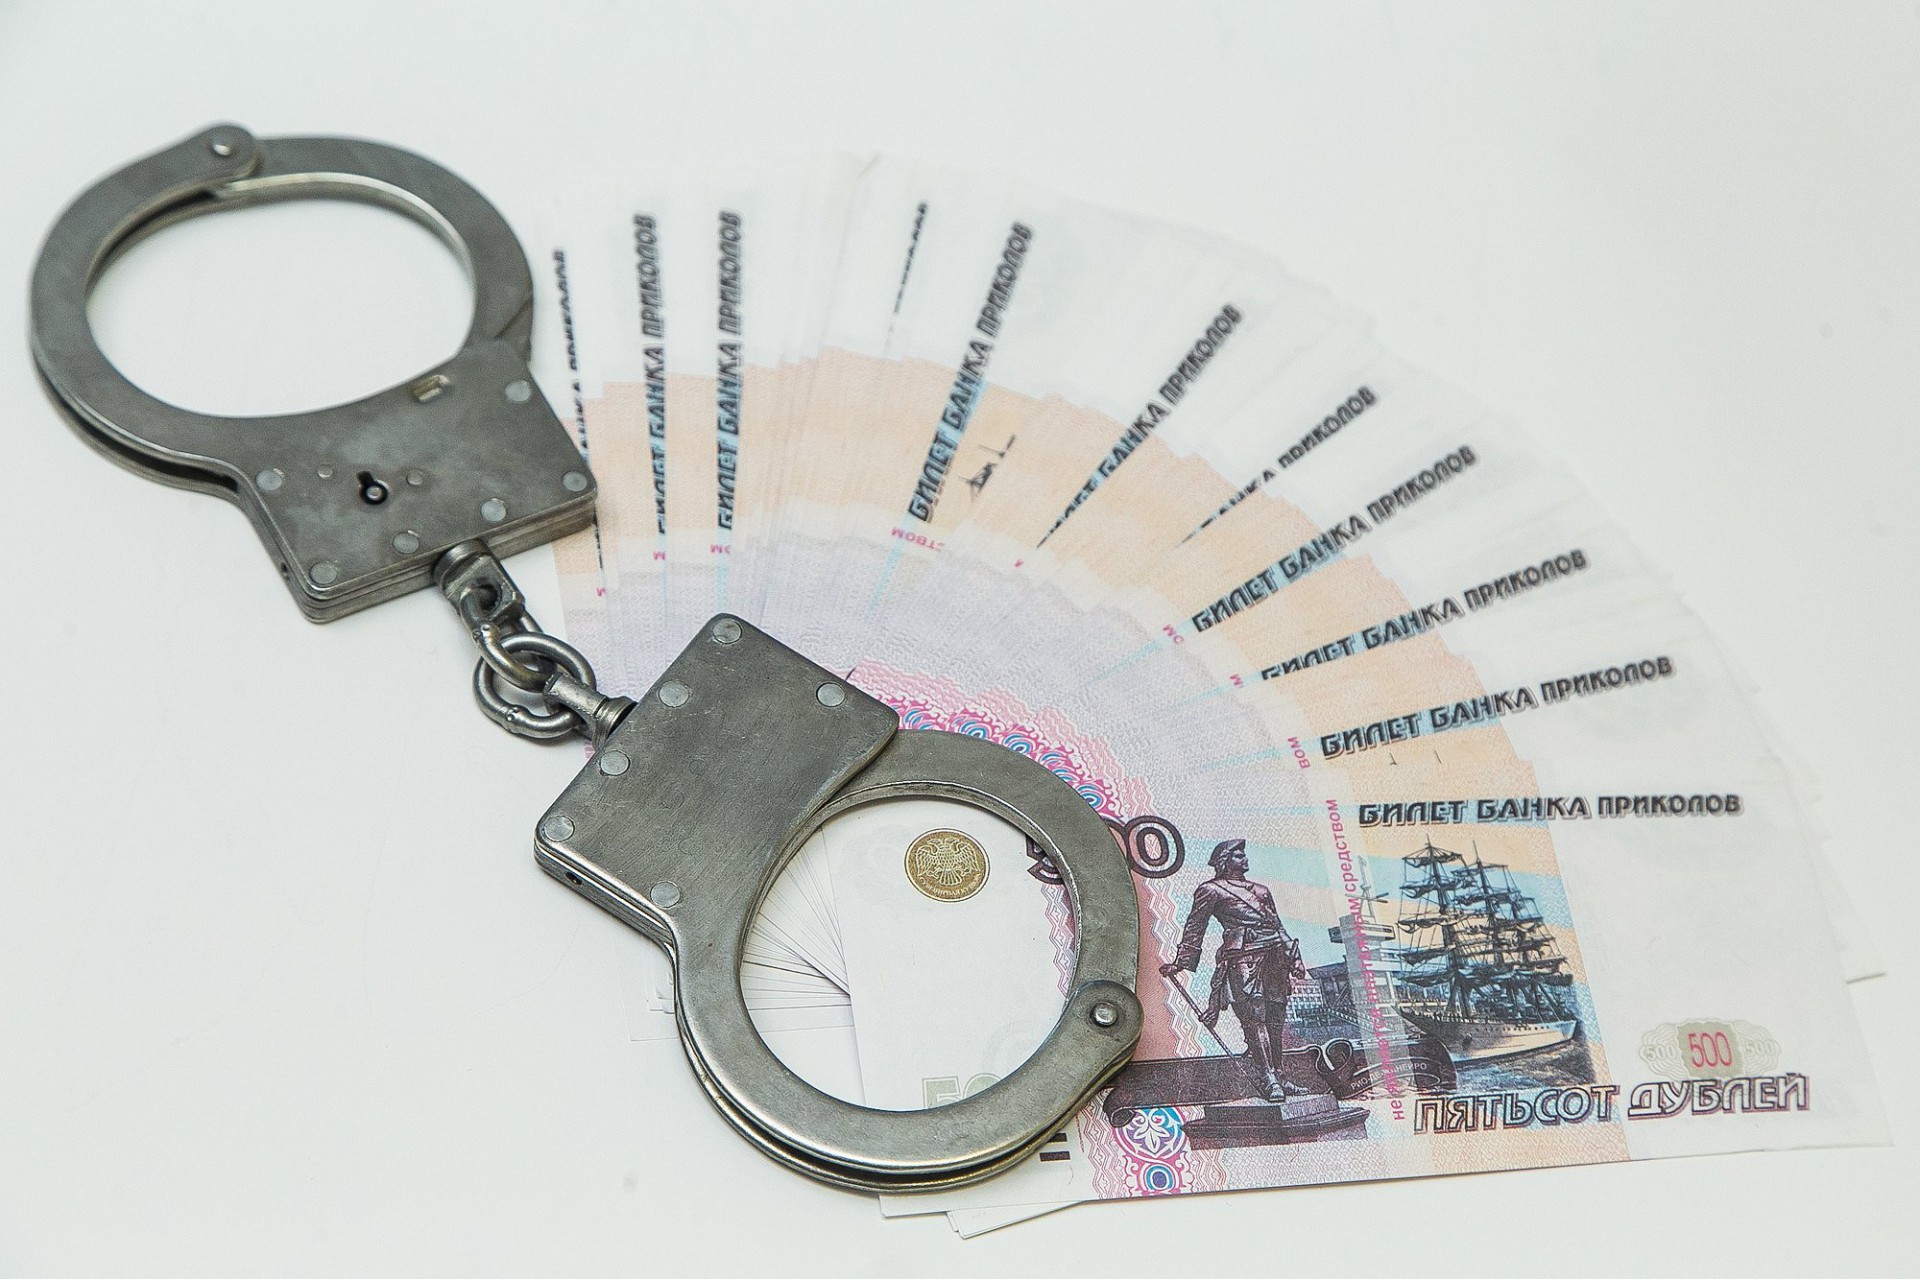 Суд признал бывшую сотрудницу банка виновной в присвоении 10 млн рублей